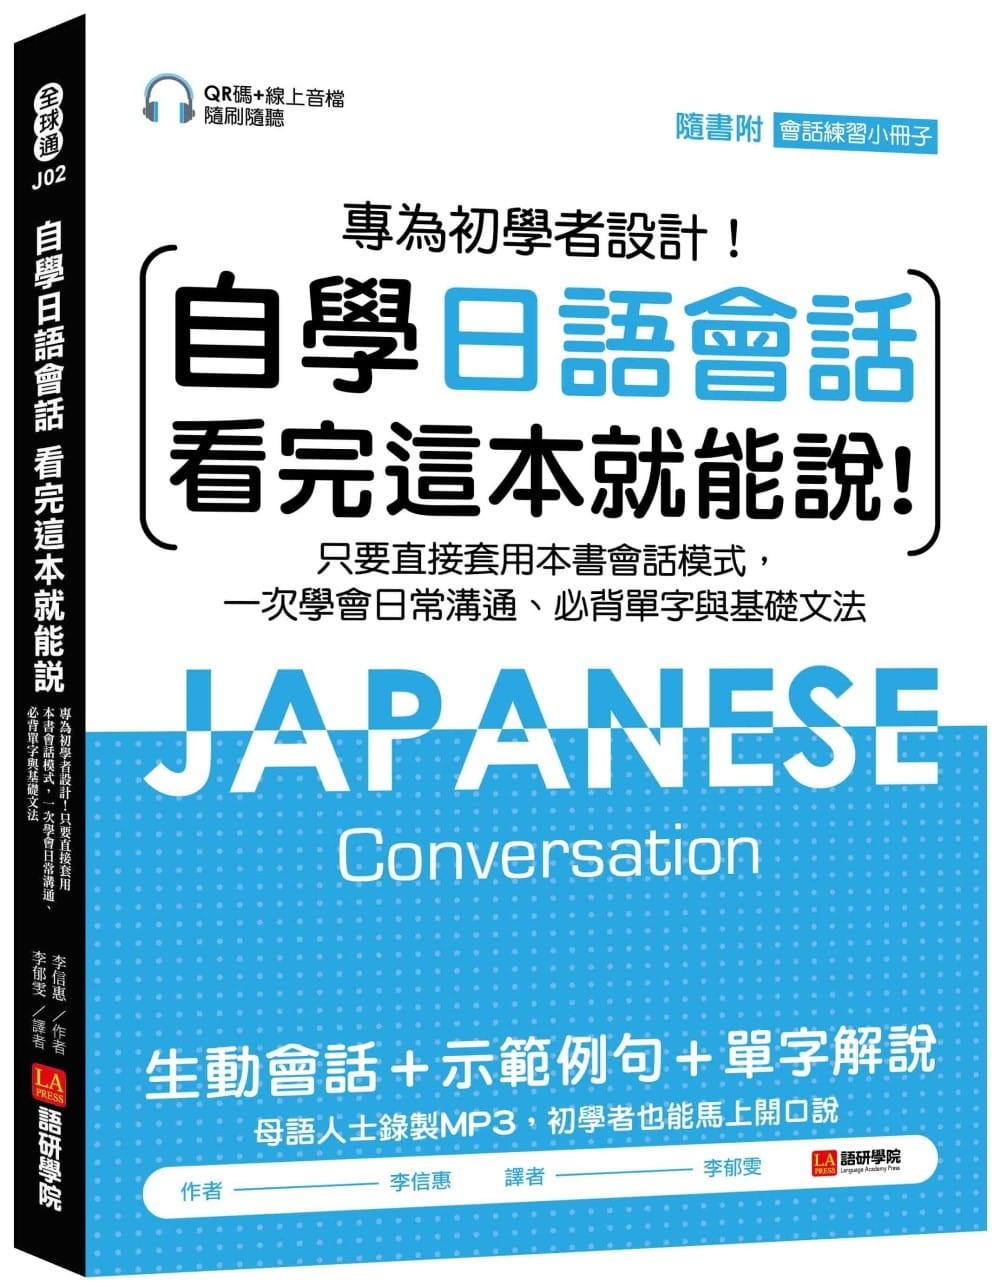 自學日語會話